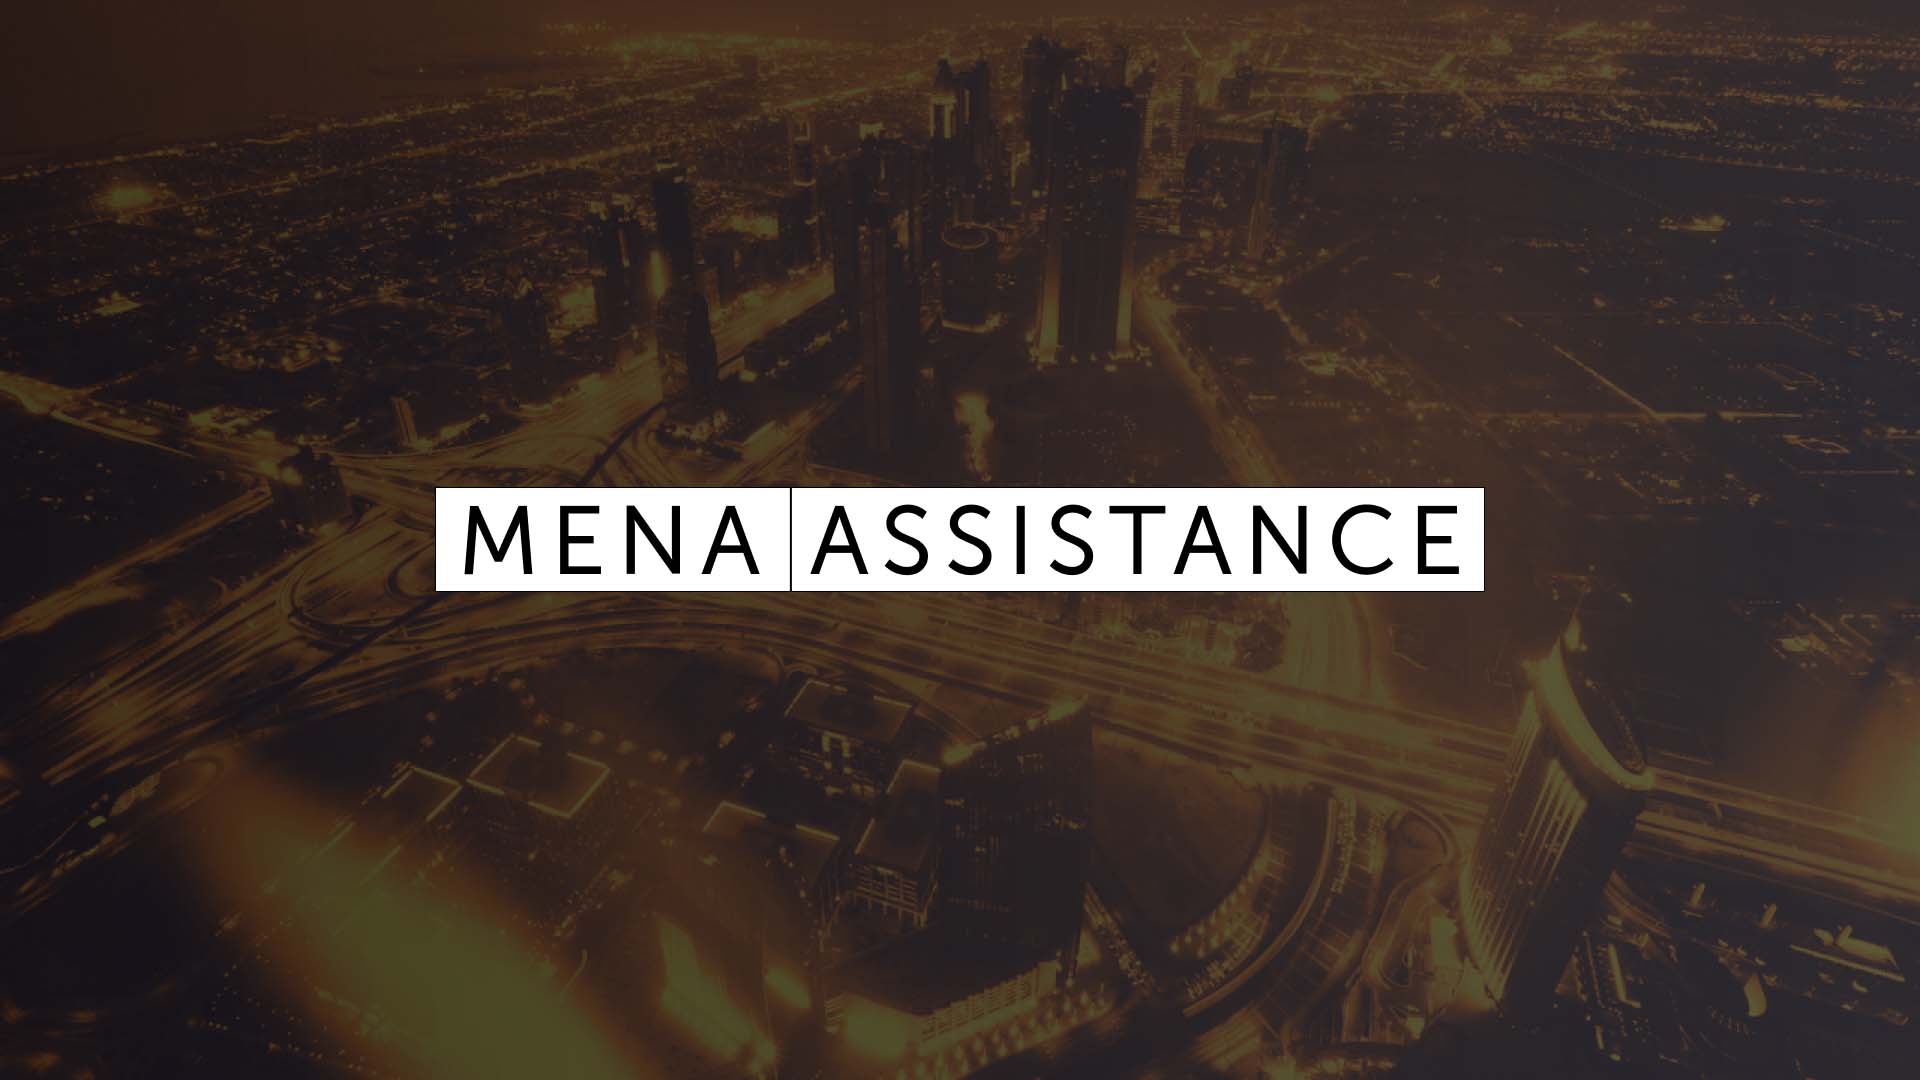 MENA Assistance